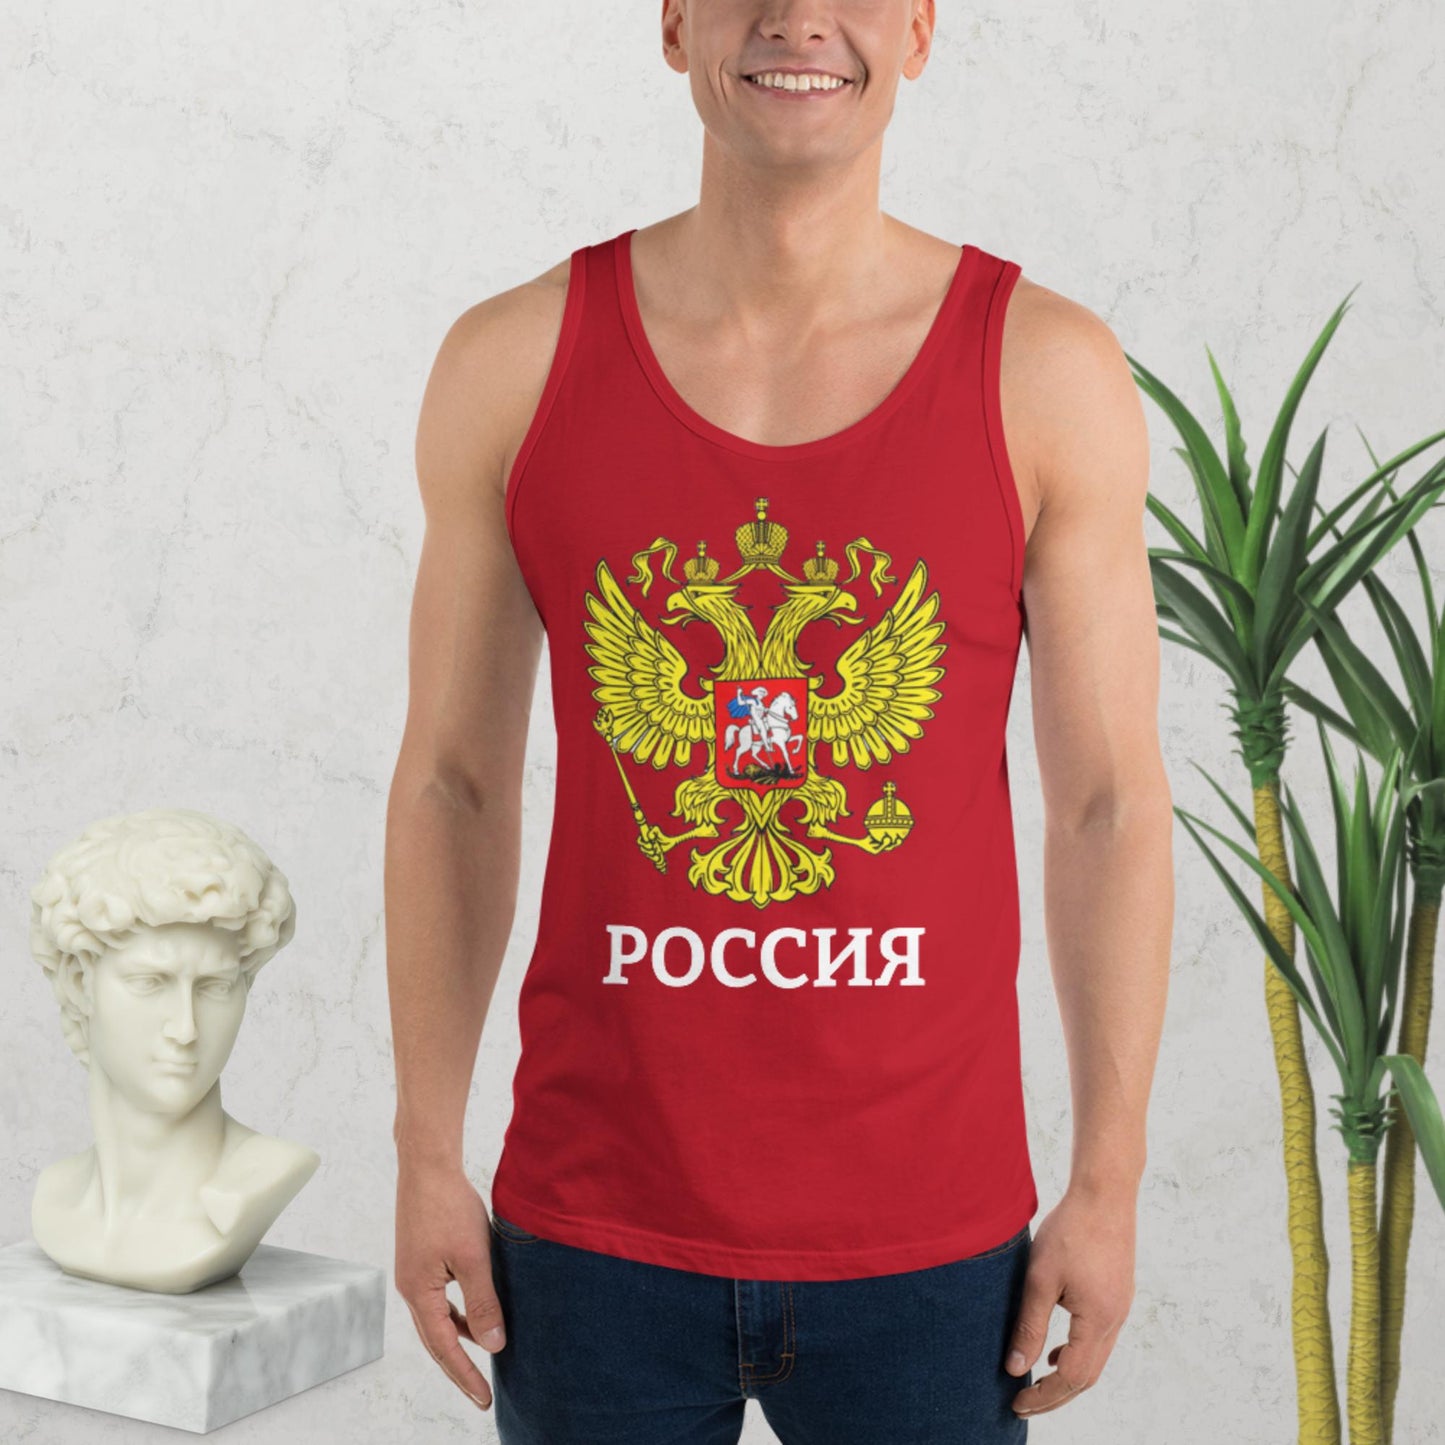 Russland Tank-Top für Herren in verschiedenen Farben